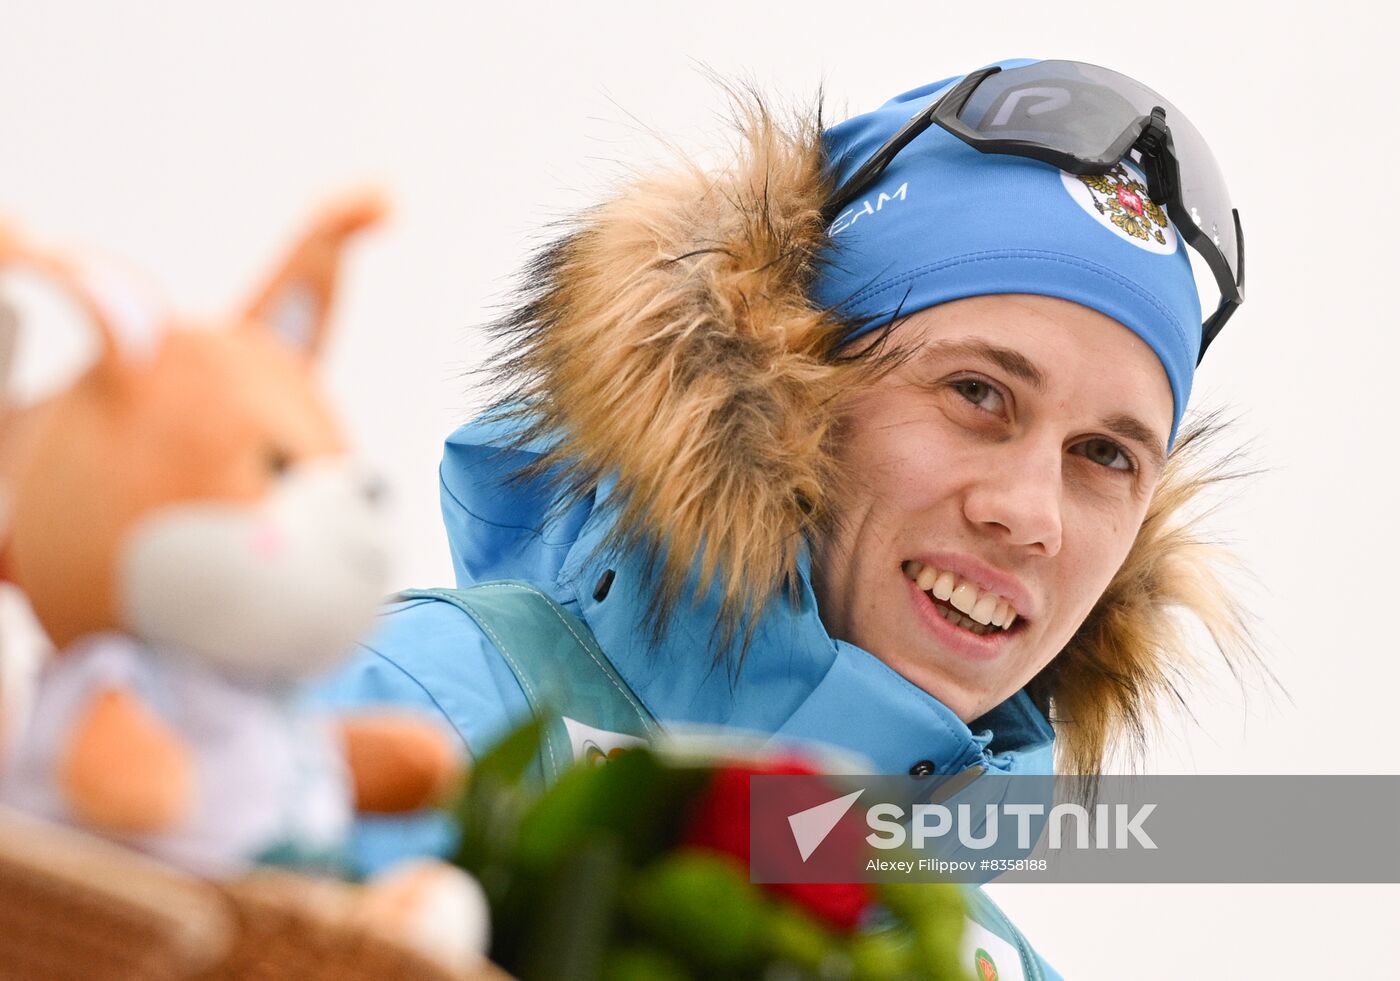 Belarus Biathlon Commonwealth Cup Men